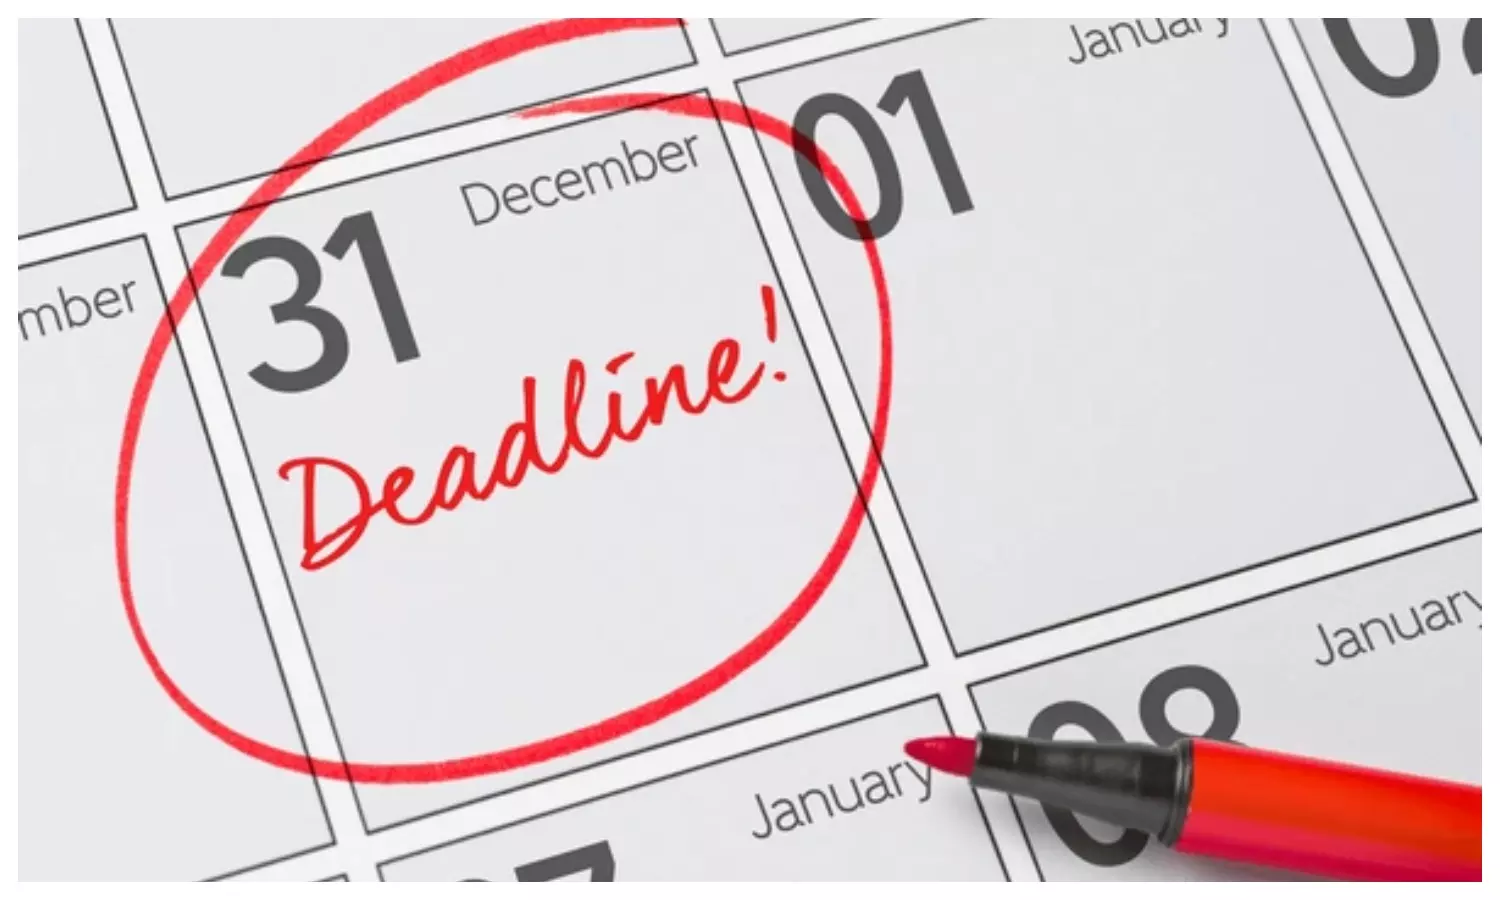 December 31 Deadline